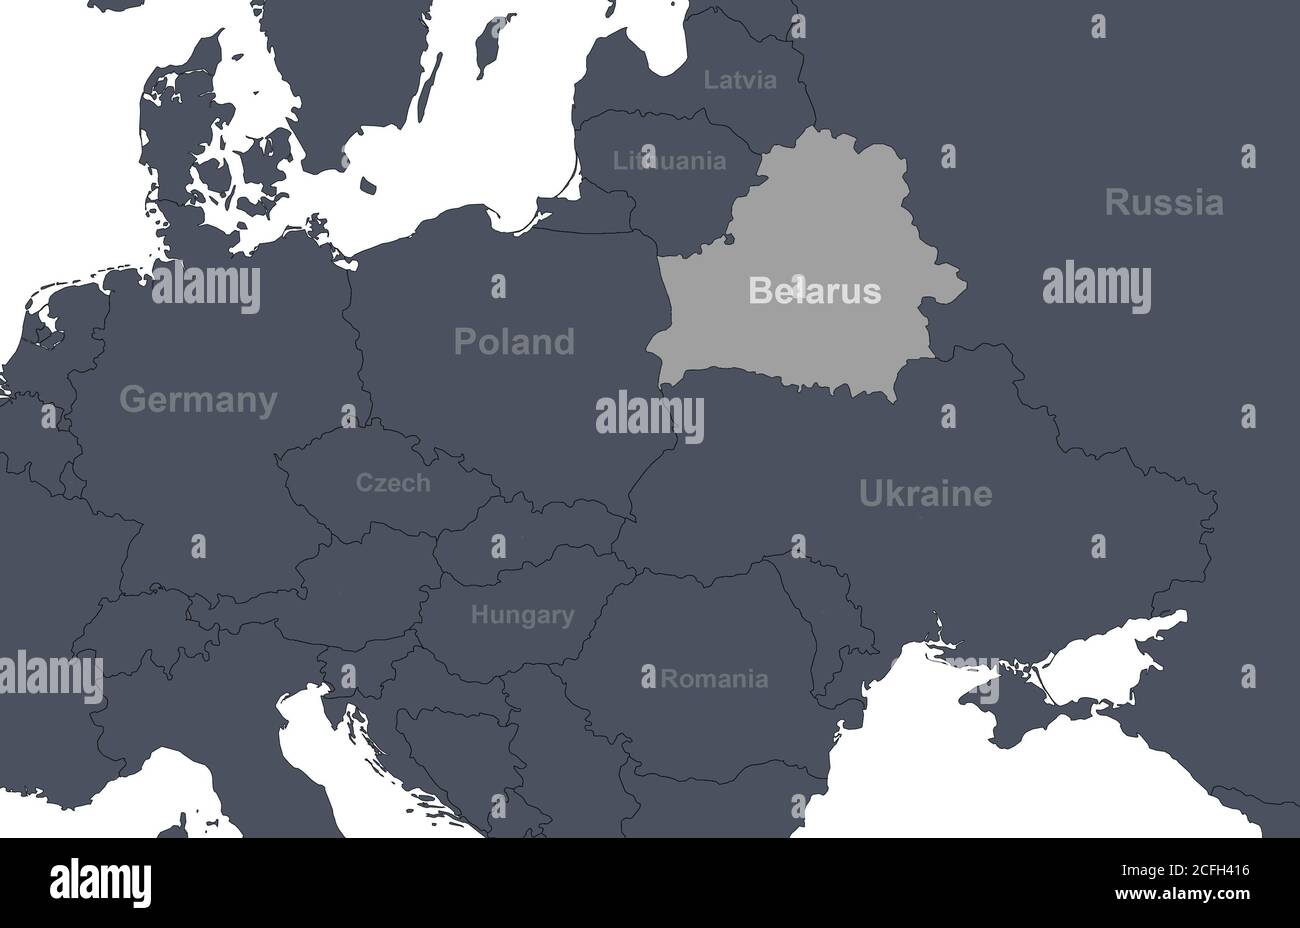 Bielorrusia en Europa mapa con fronteras de países. Detalle del mapa político mundial, región de Europa central y oriental con silueta. Aislamiento de tierra Foto de stock